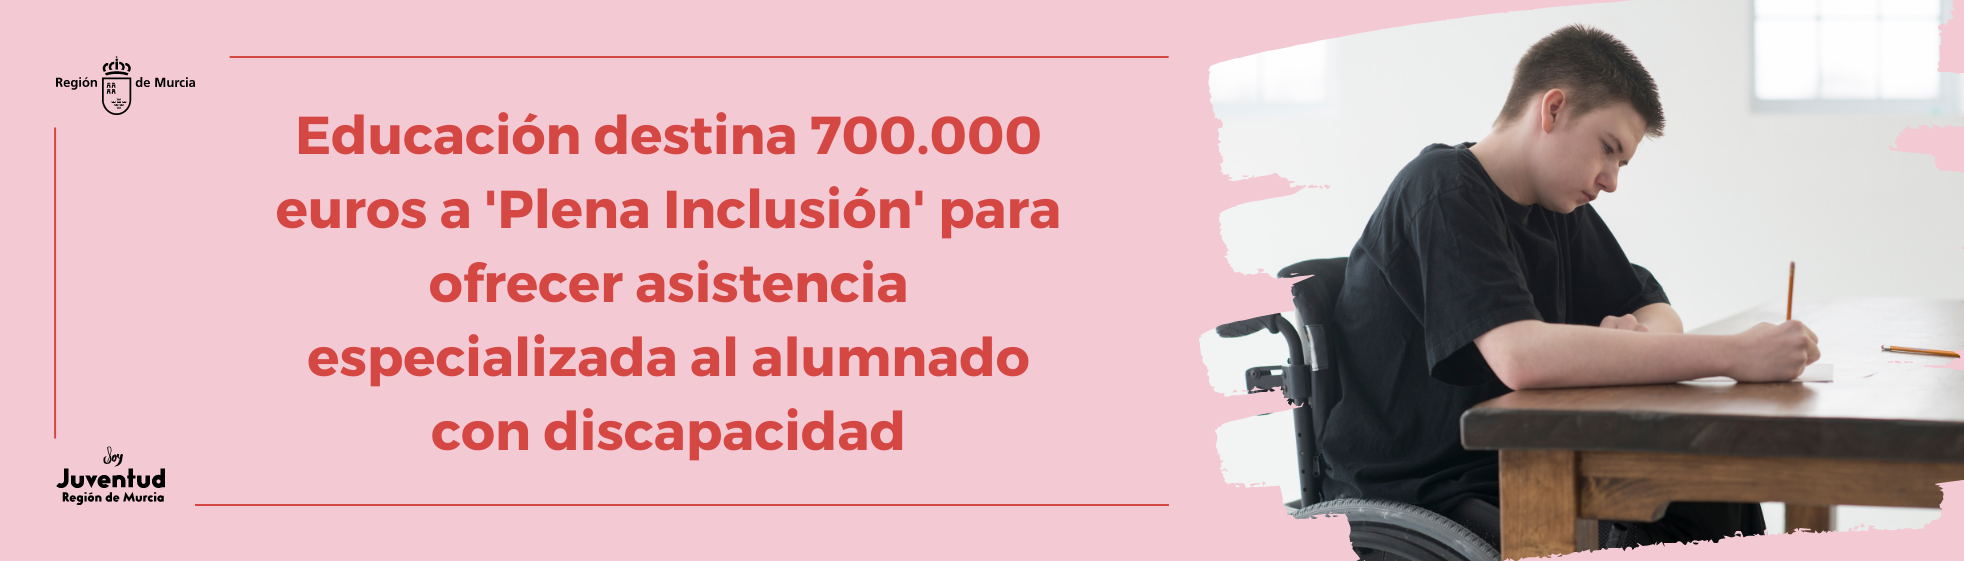 Educación destina 700.000 euros a Plena Inclusión para ofrecer asistencia especializada al alumnado con discapacidad